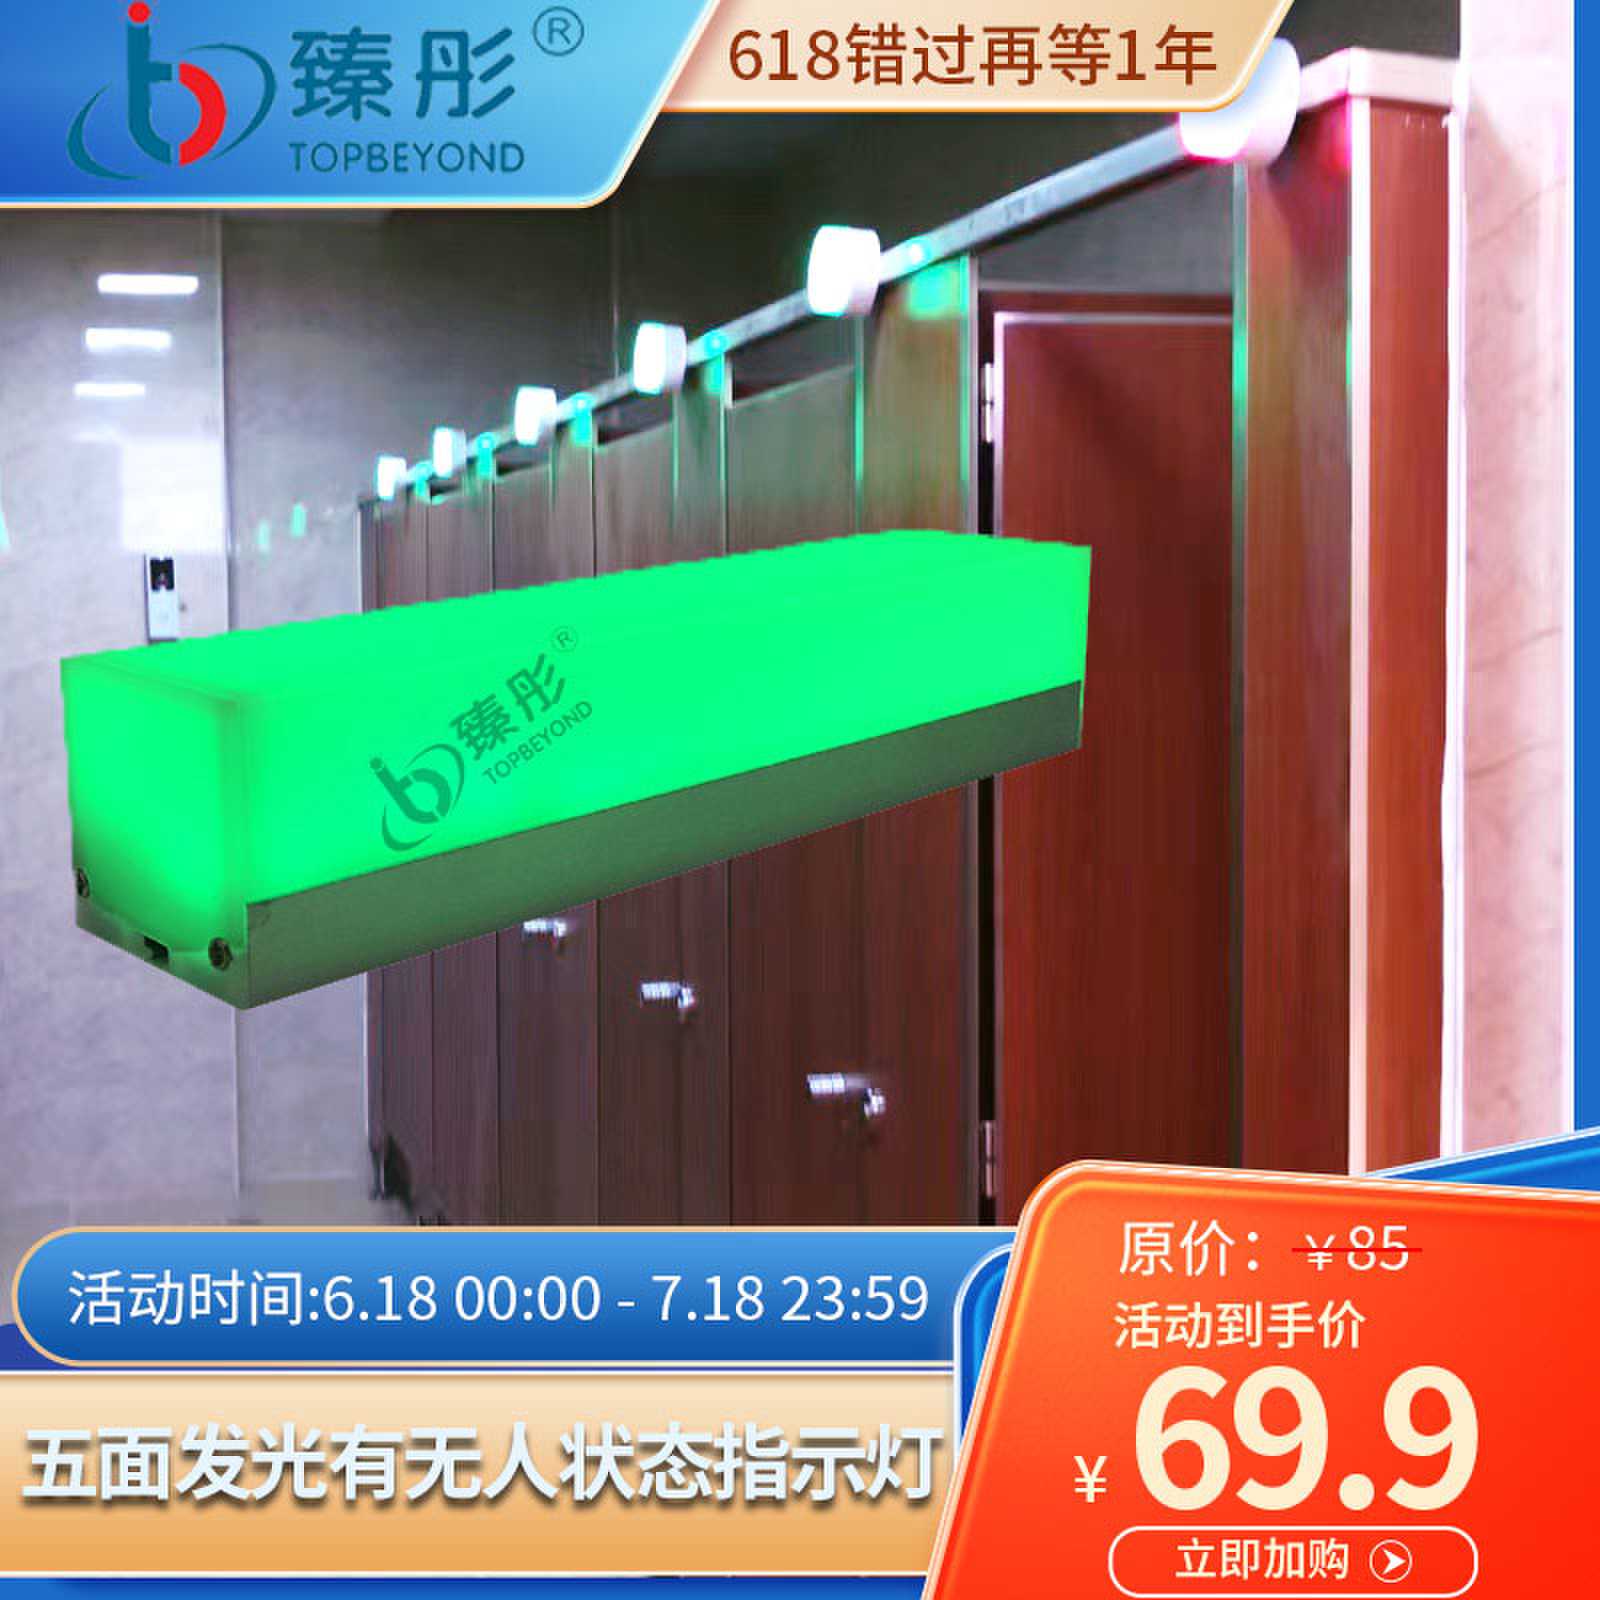 智慧公厕指示灯五面发光红绿双色显示挂壁安装定制有人无人厕所灯